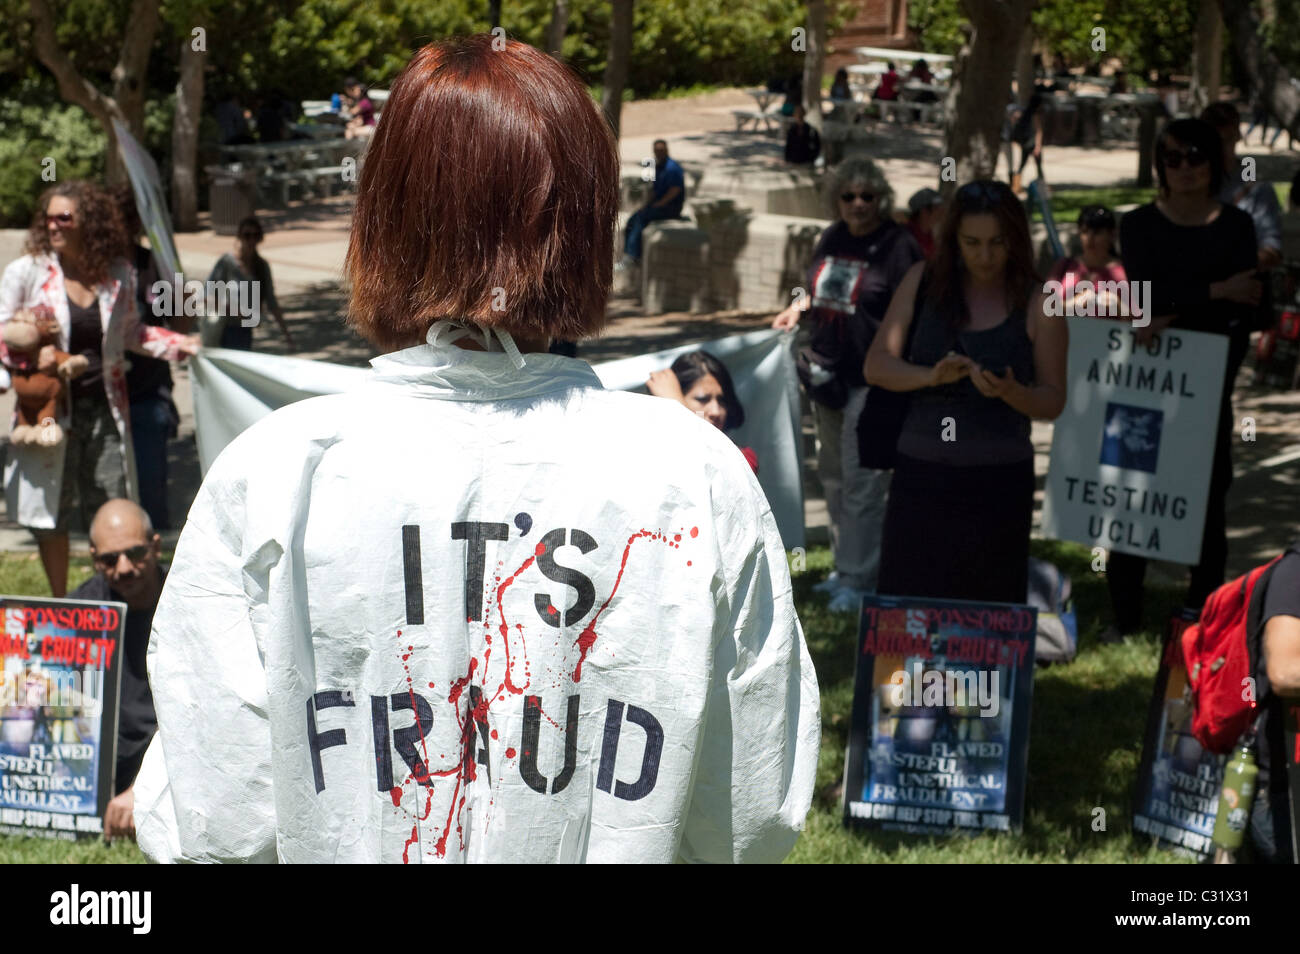 Un animale diritti protester indossa una tuta hazmat con sangue finto e le parole "frode" sul retro del si trova di fronte ad una folla. Foto Stock